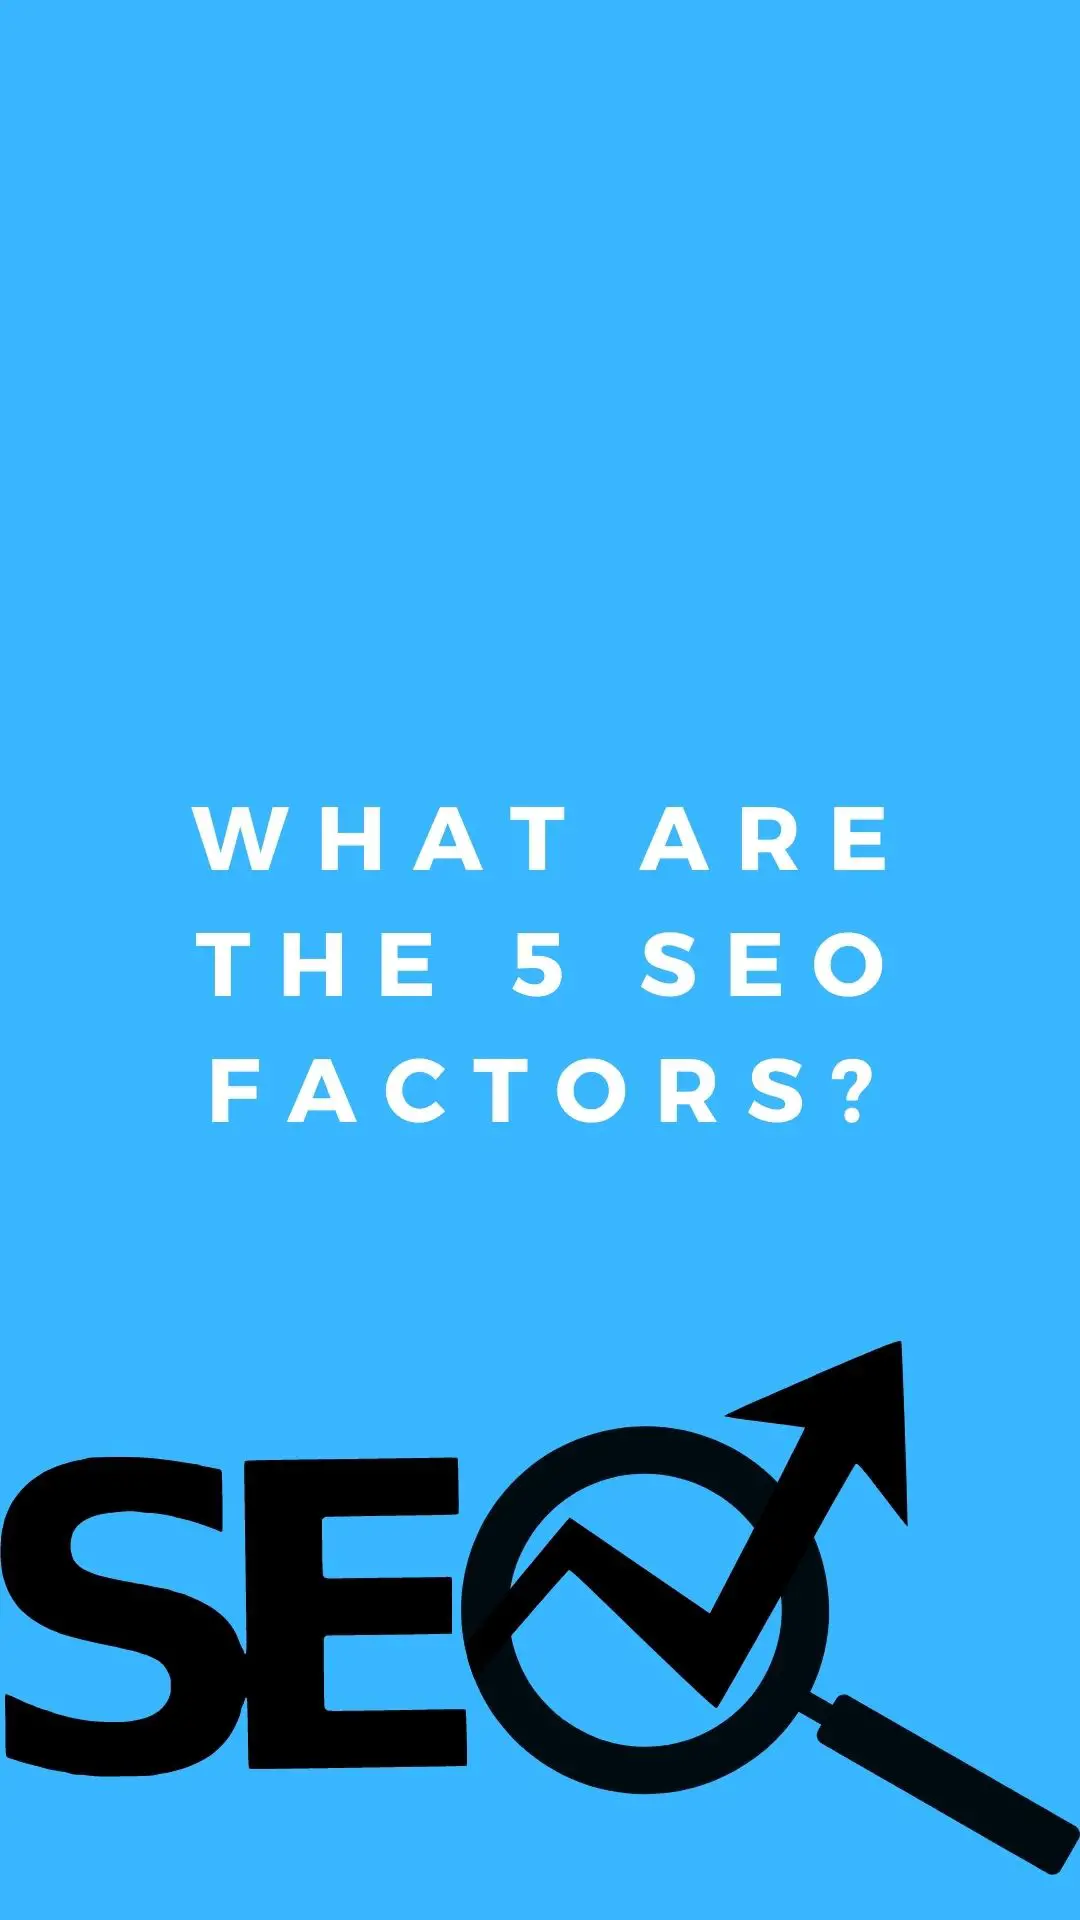 Vilka är de 5 SEO-faktorerna?: Sökordsforskning, URL-optimering, metataggar, headertaggar, innehållsoptimering